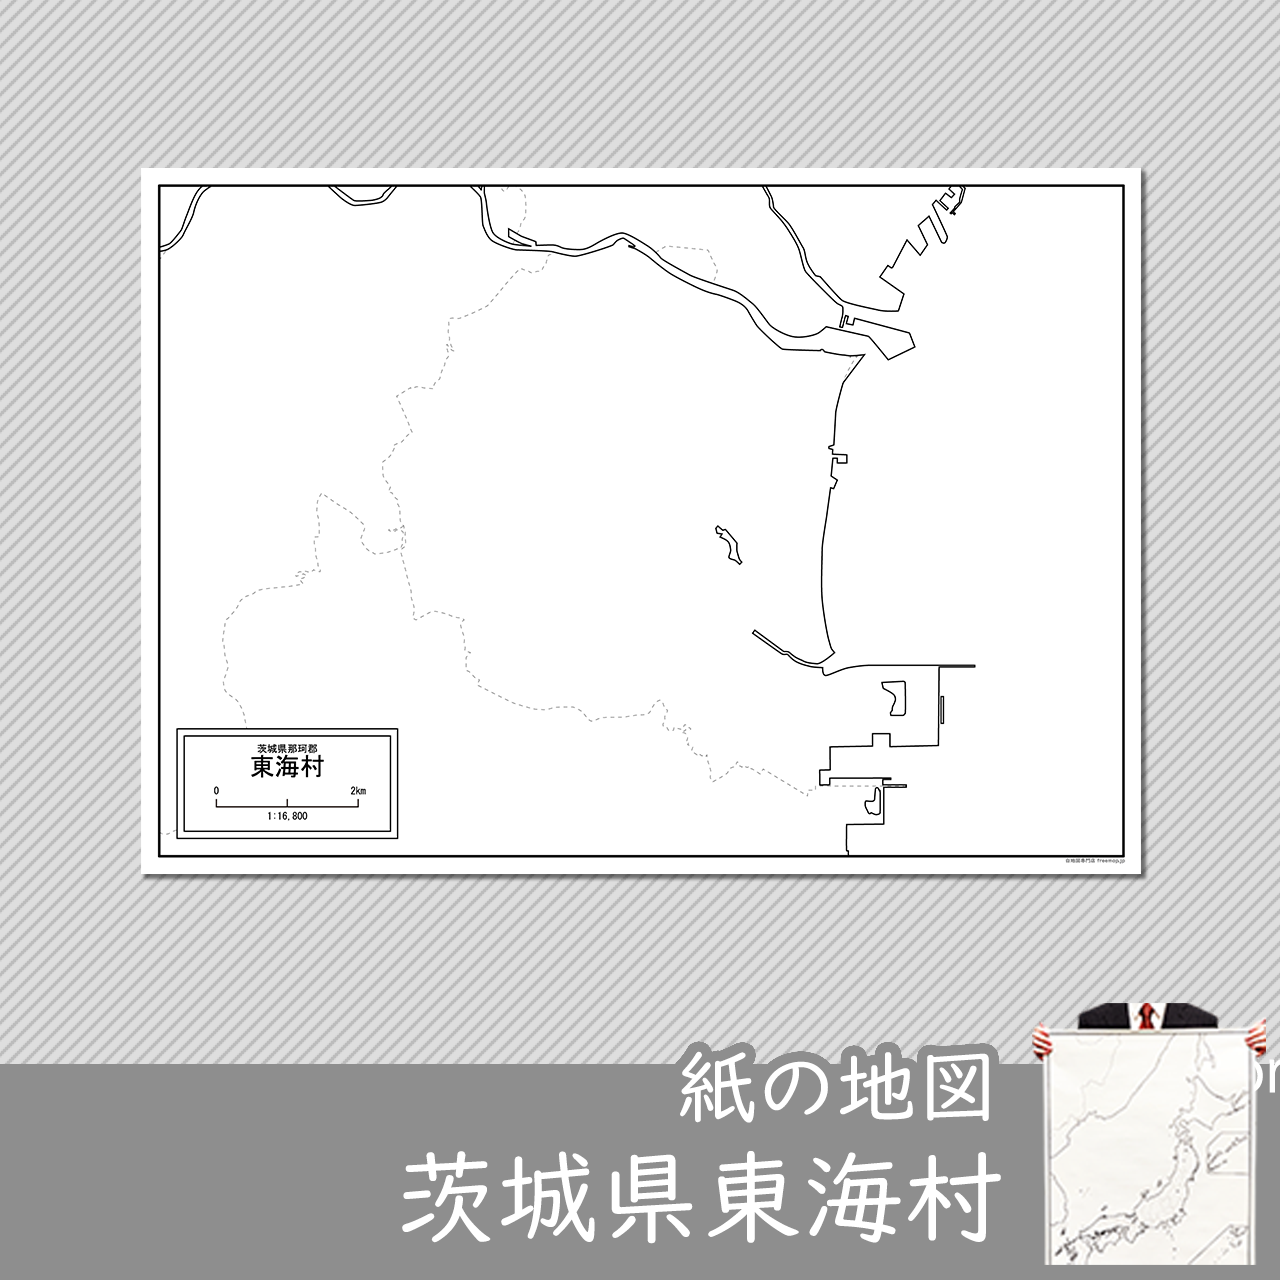 東海村の紙の白地図